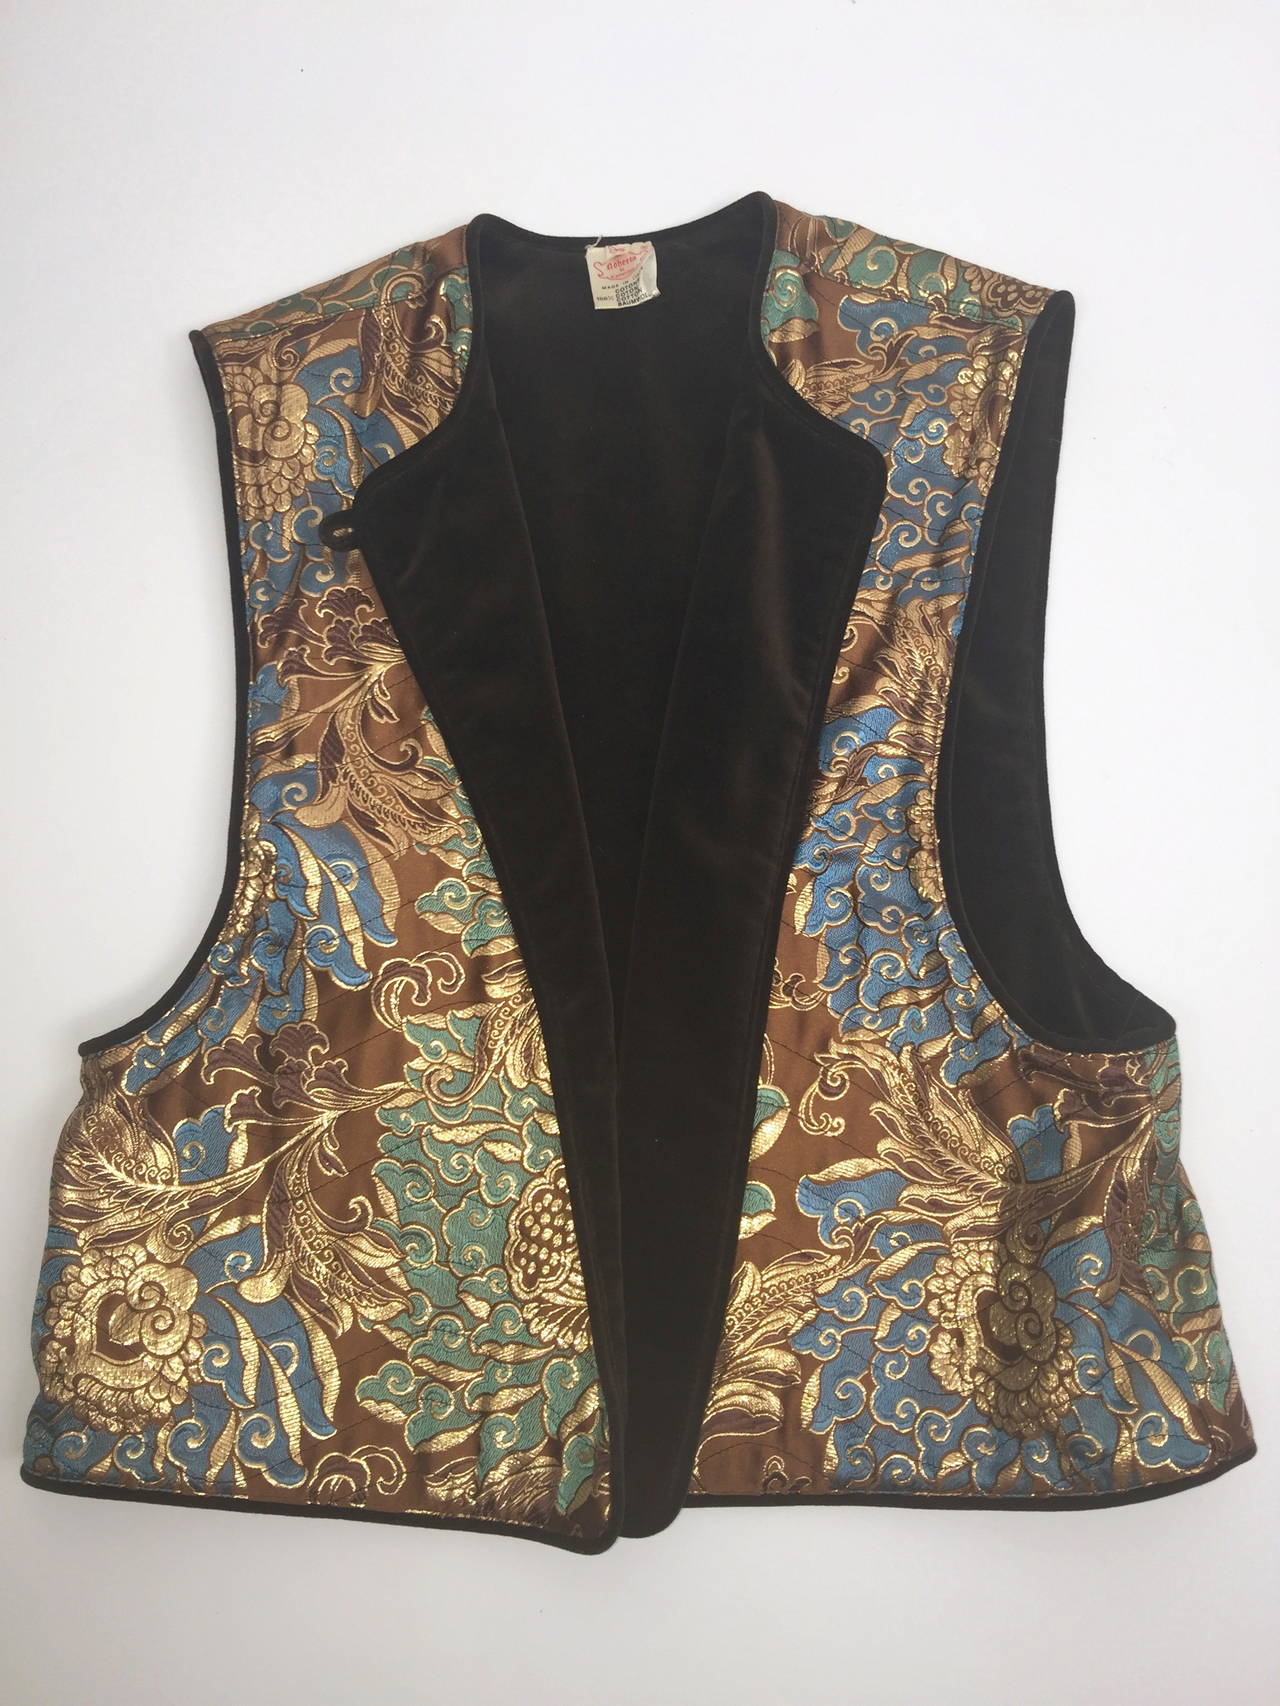 Women's Rare Roberta di Camerino Vintage Waistcoat/Vest. For Sale